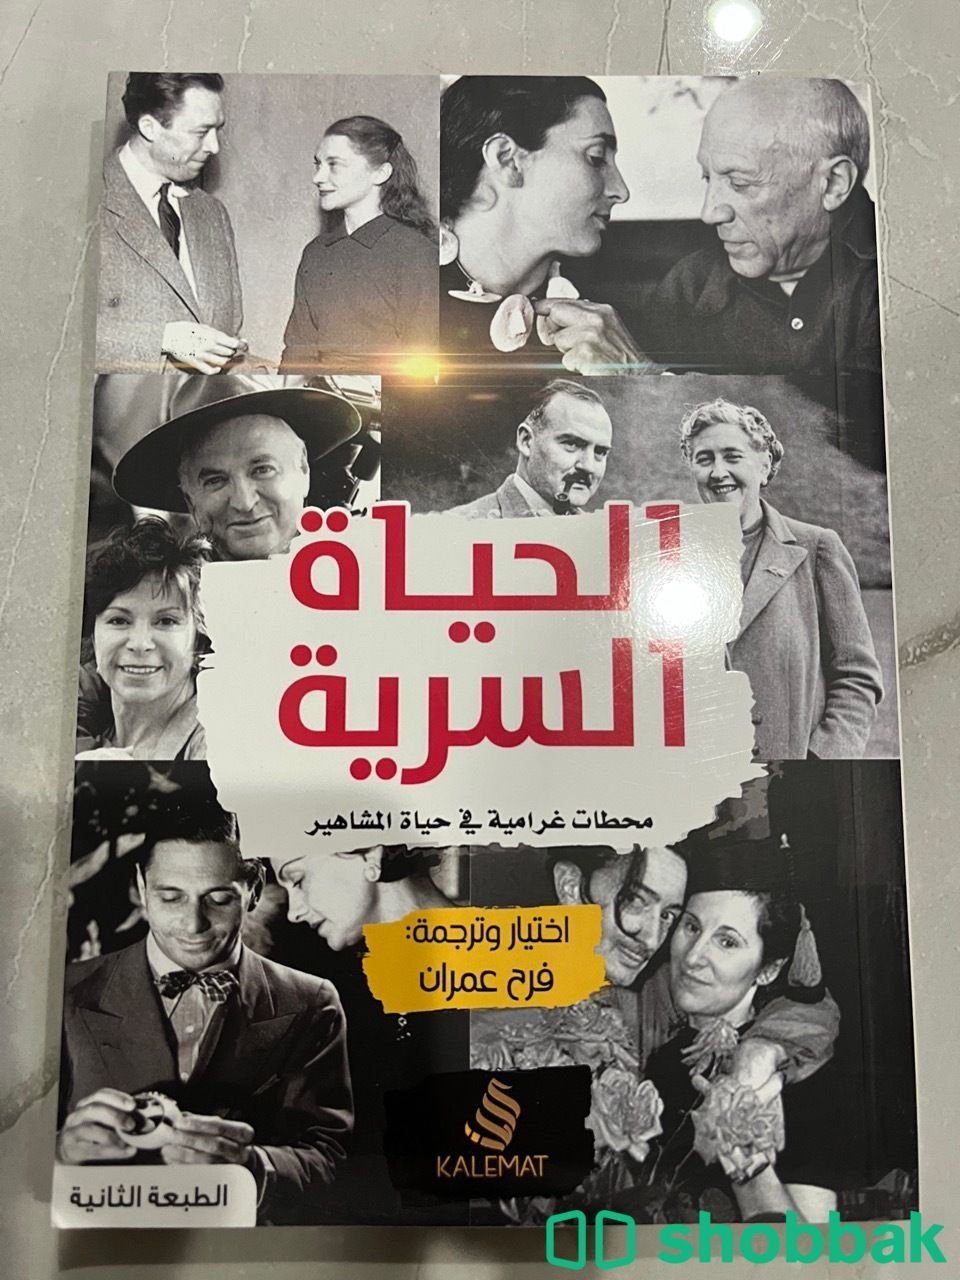 كتاب الحياة السرية محطات غرامية في حياة المشاهير Shobbak Saudi Arabia